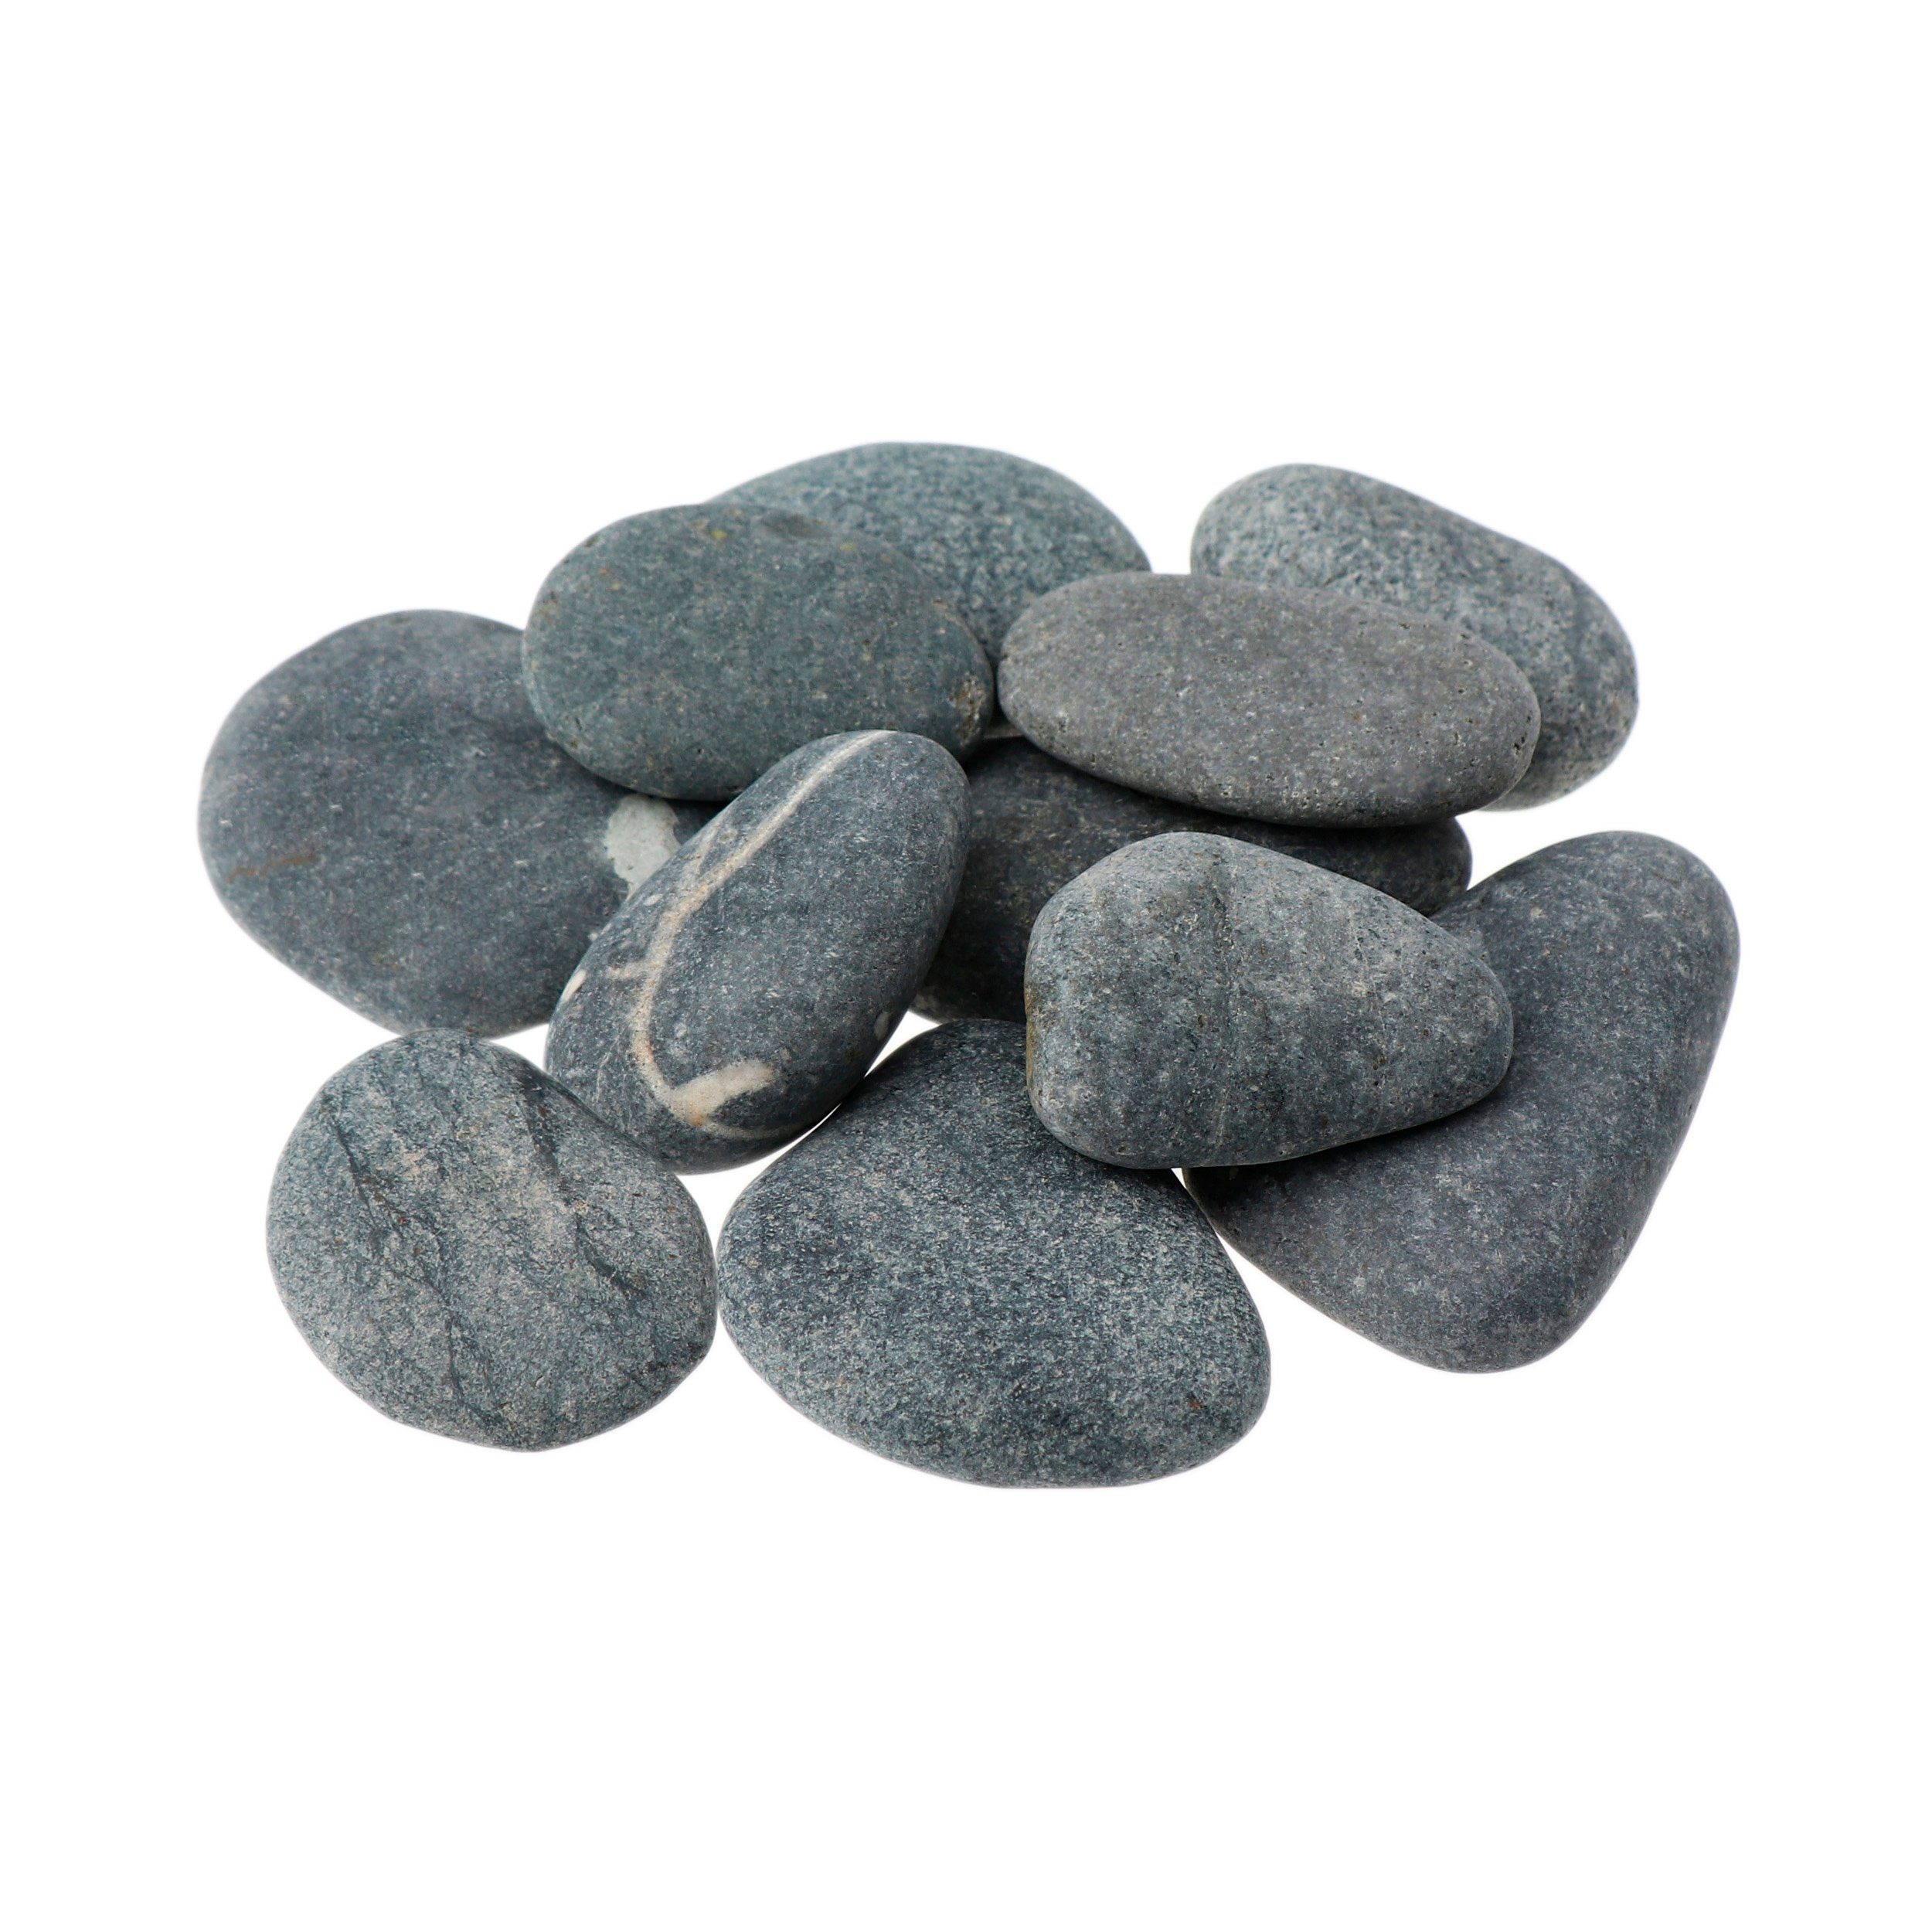 NKlaus Mineralstein 500g - Entspannungsstein Wellness Massagesteine vulk Hot Stone 60mm 50